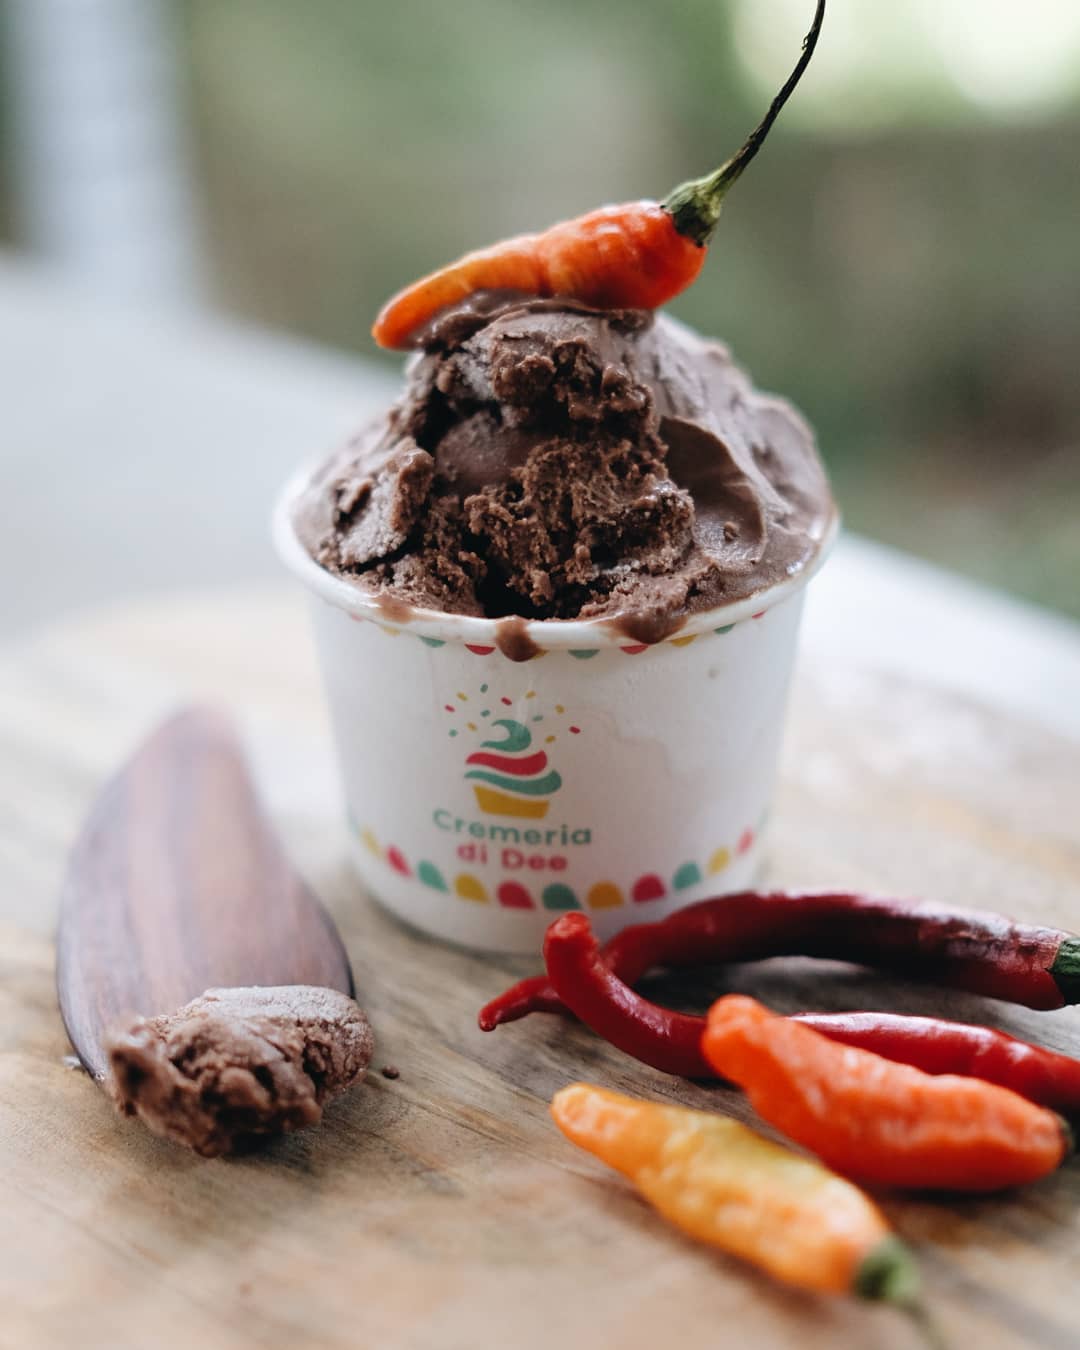 Choco Chili buat kamu yang ingin mencoba gelato dengan sensasi berbeda - via Instagram/@cremeriadidee